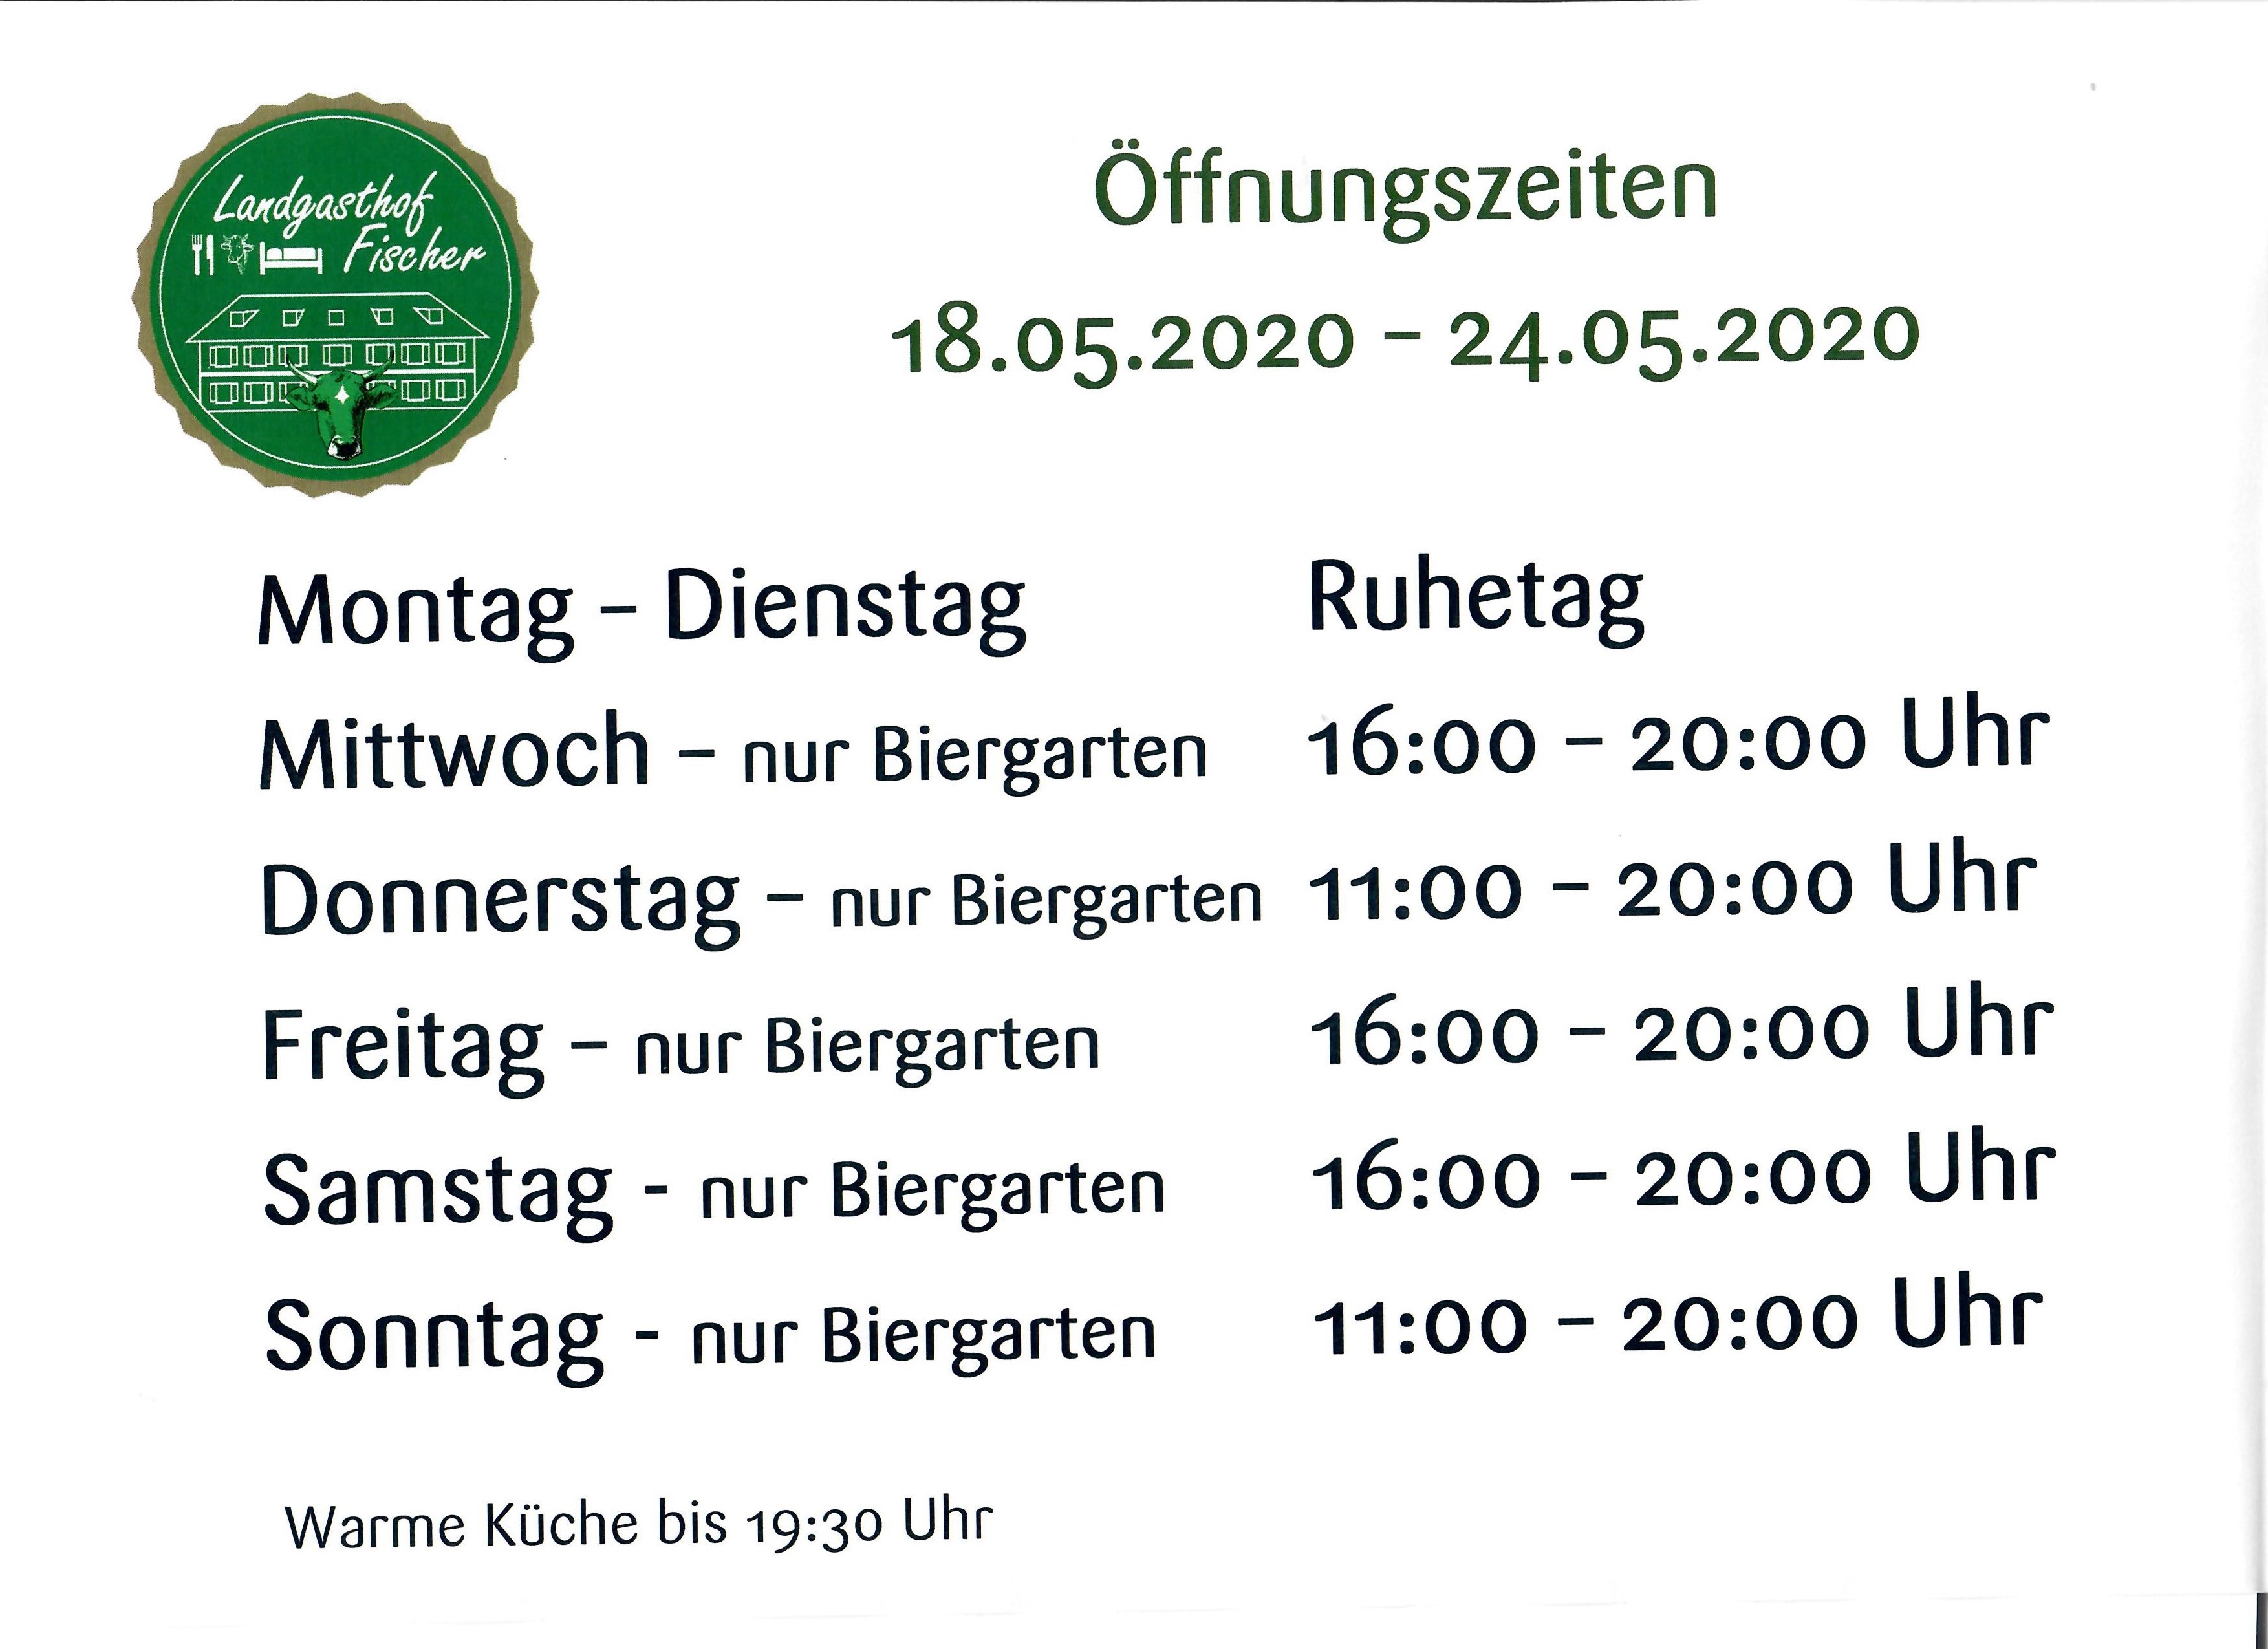 Öffnungszeiten Landgasthof Fischer ab 18.05.2020